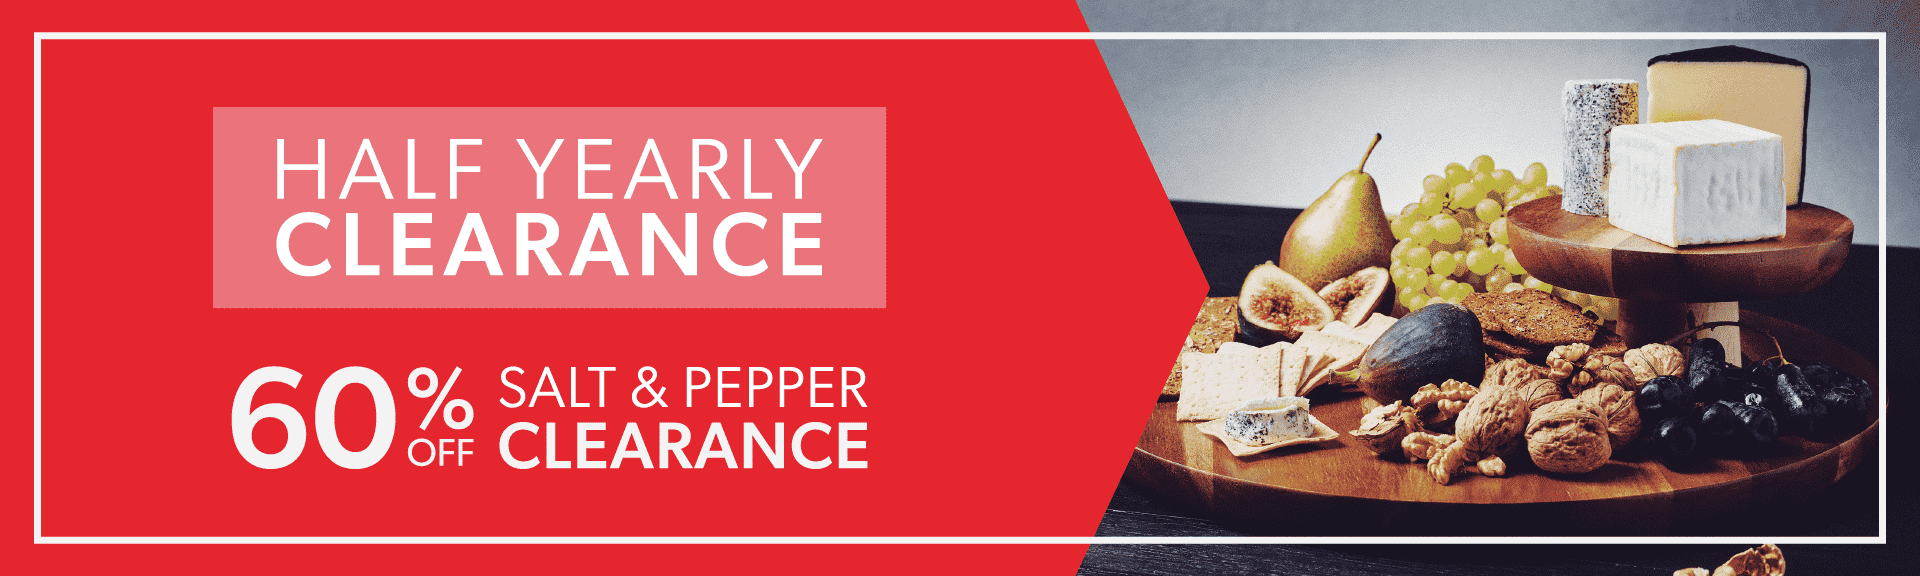 60% Off Salt & Pepper Clearance